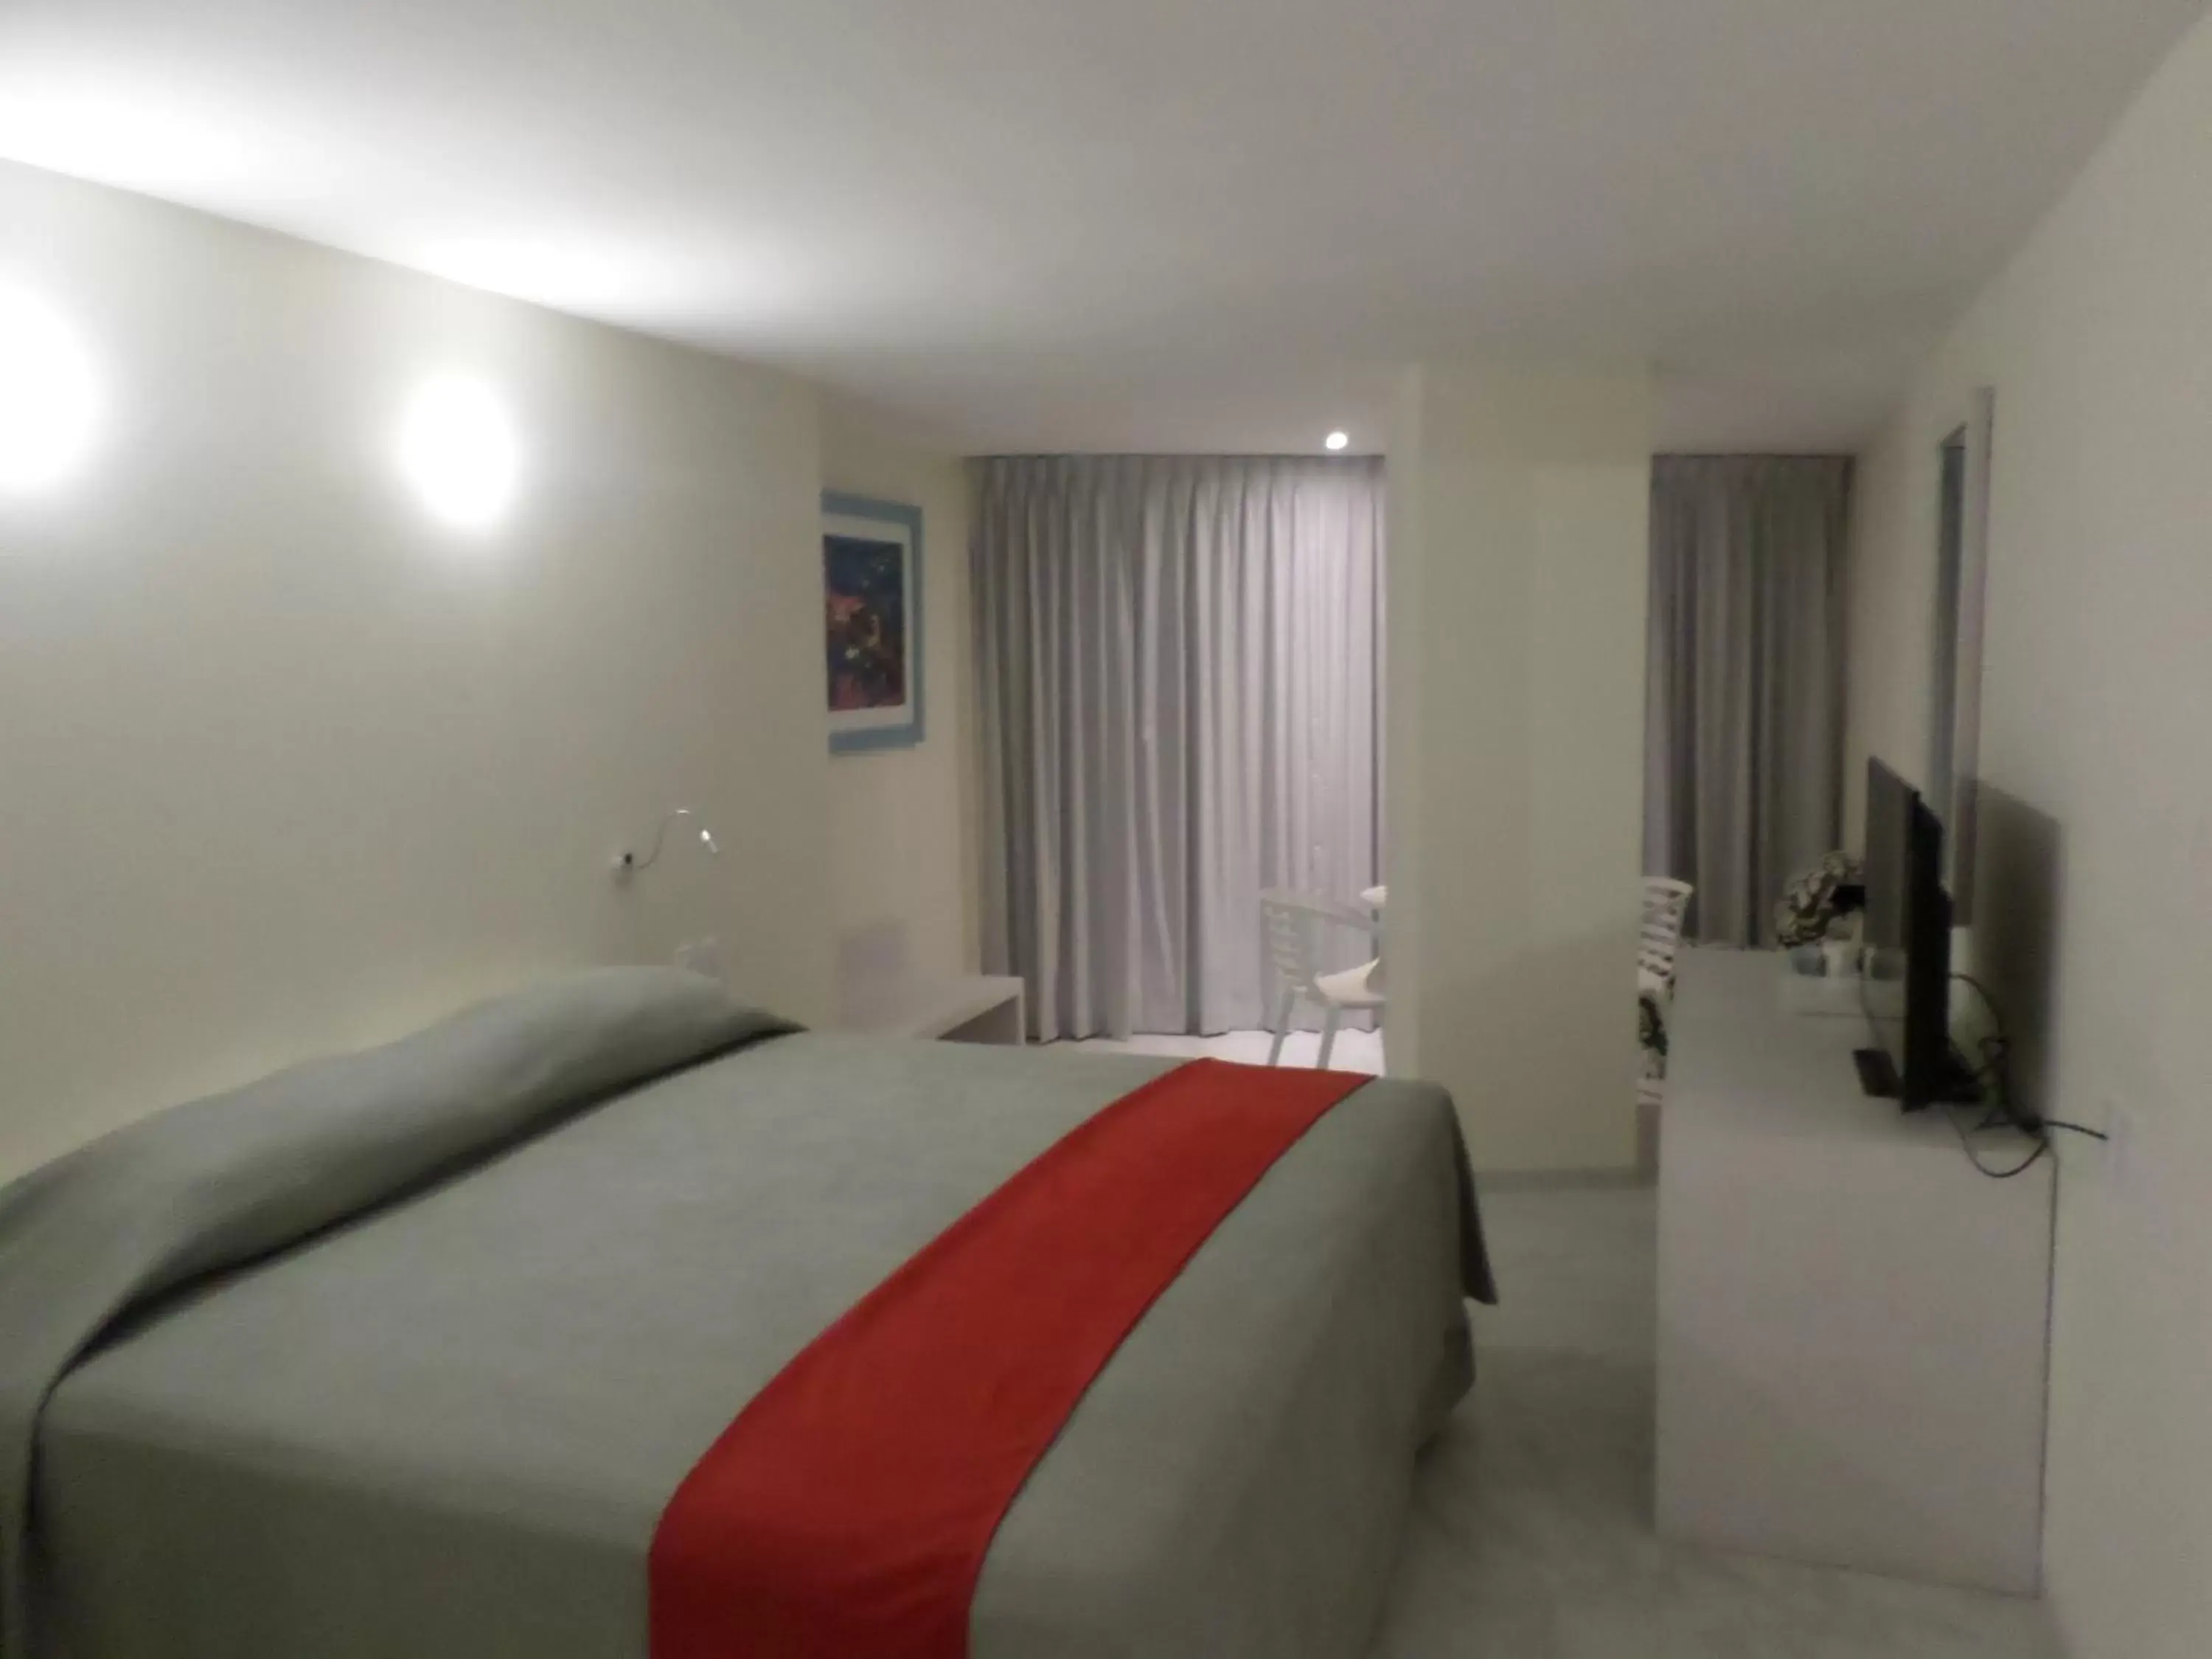 Bedroom in We Hotel Acapulco